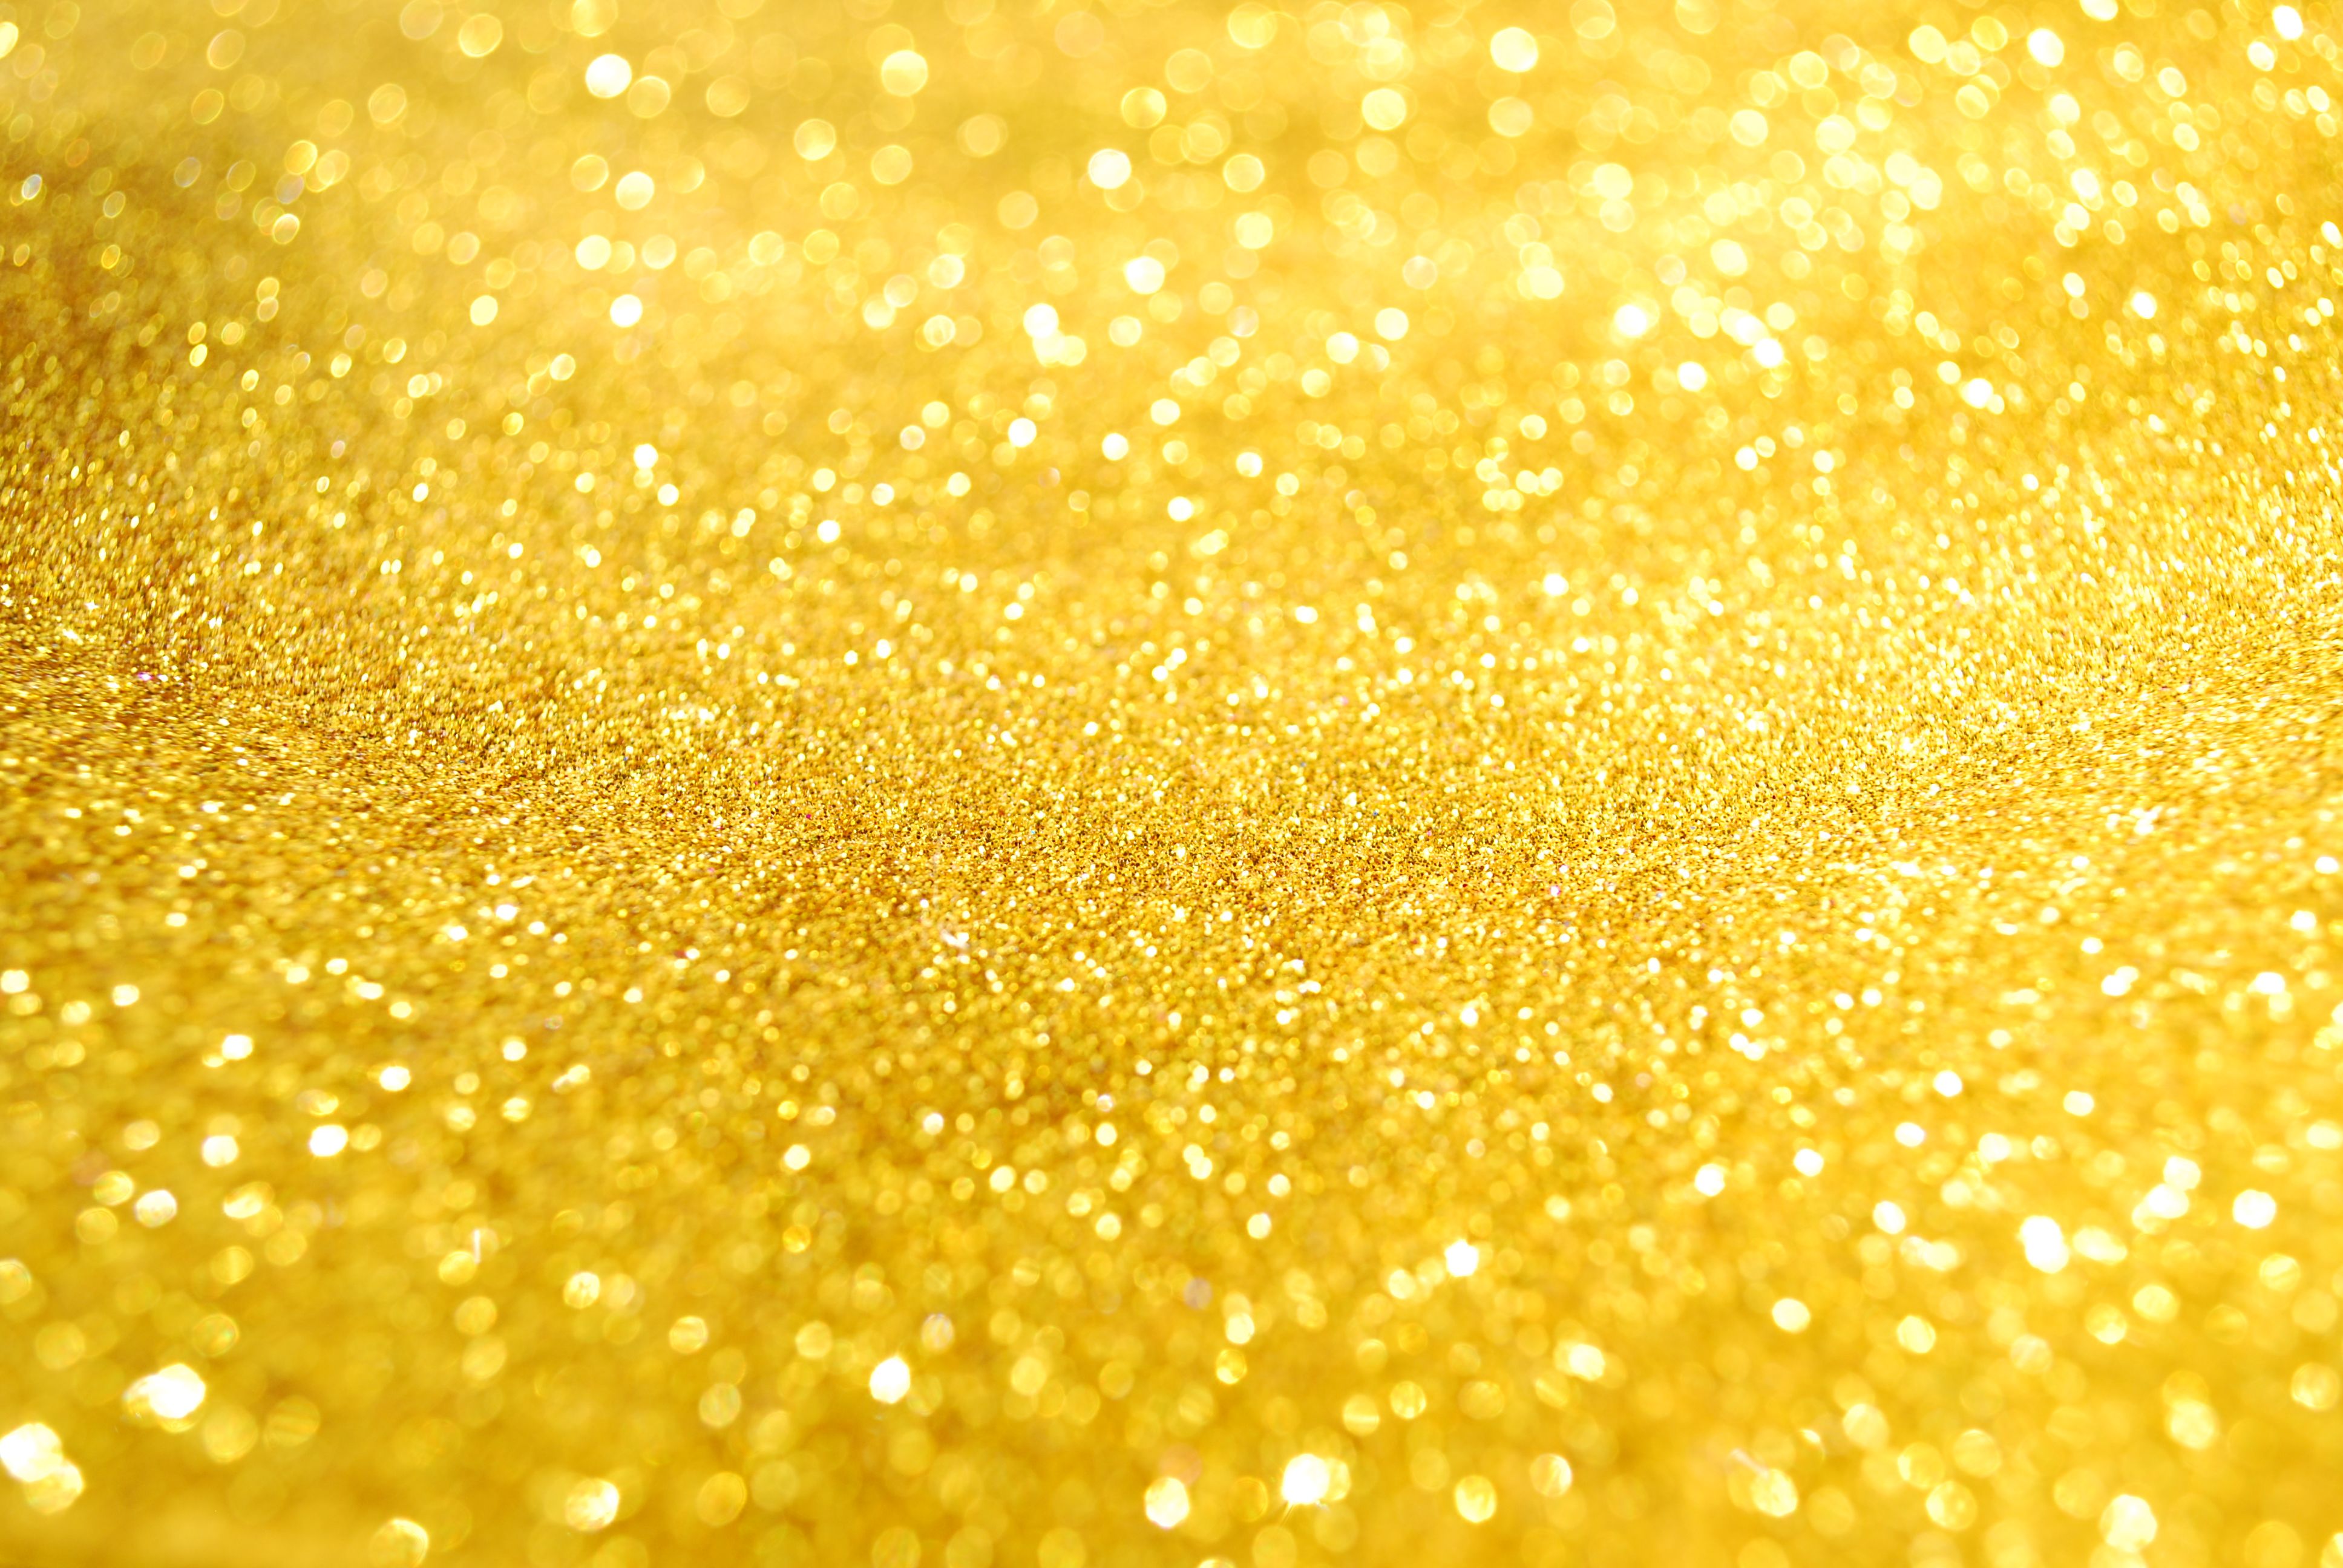 All That Glitters Wallpaper. All That Glitters Wallpaper, All That Glitters Background and Everything's Glitters Wallpaper